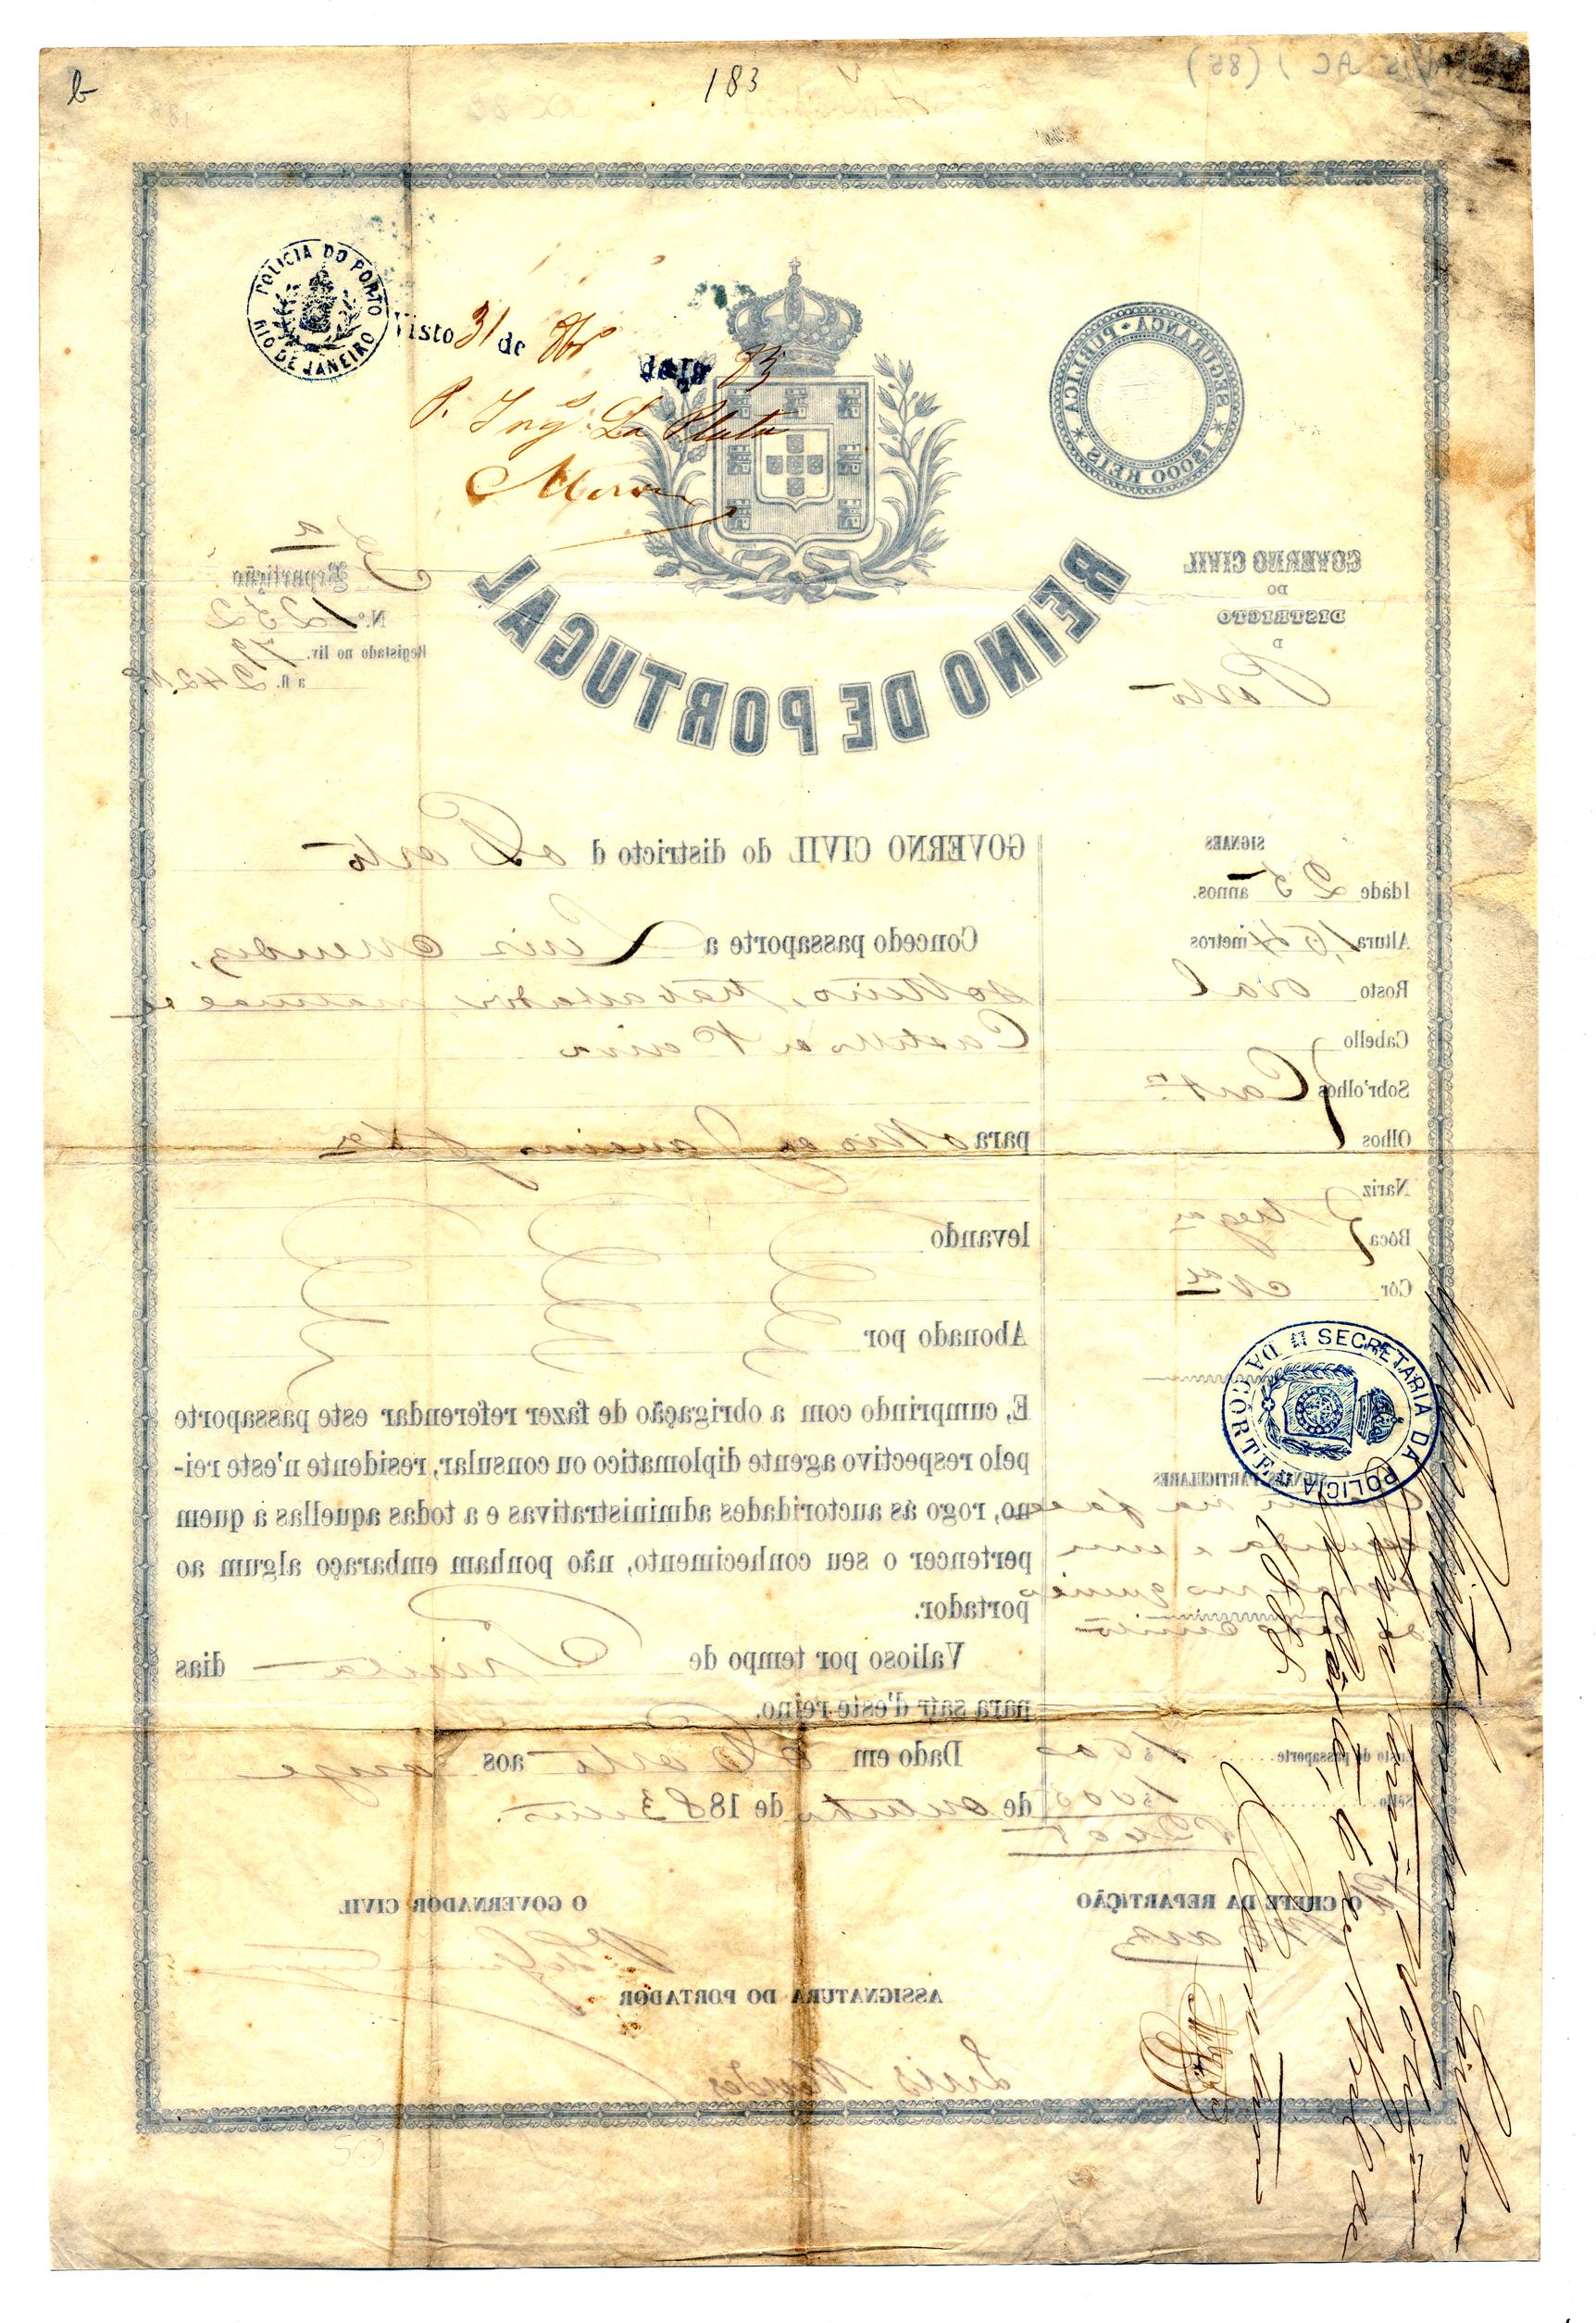 Passaporte de Luís Mendes